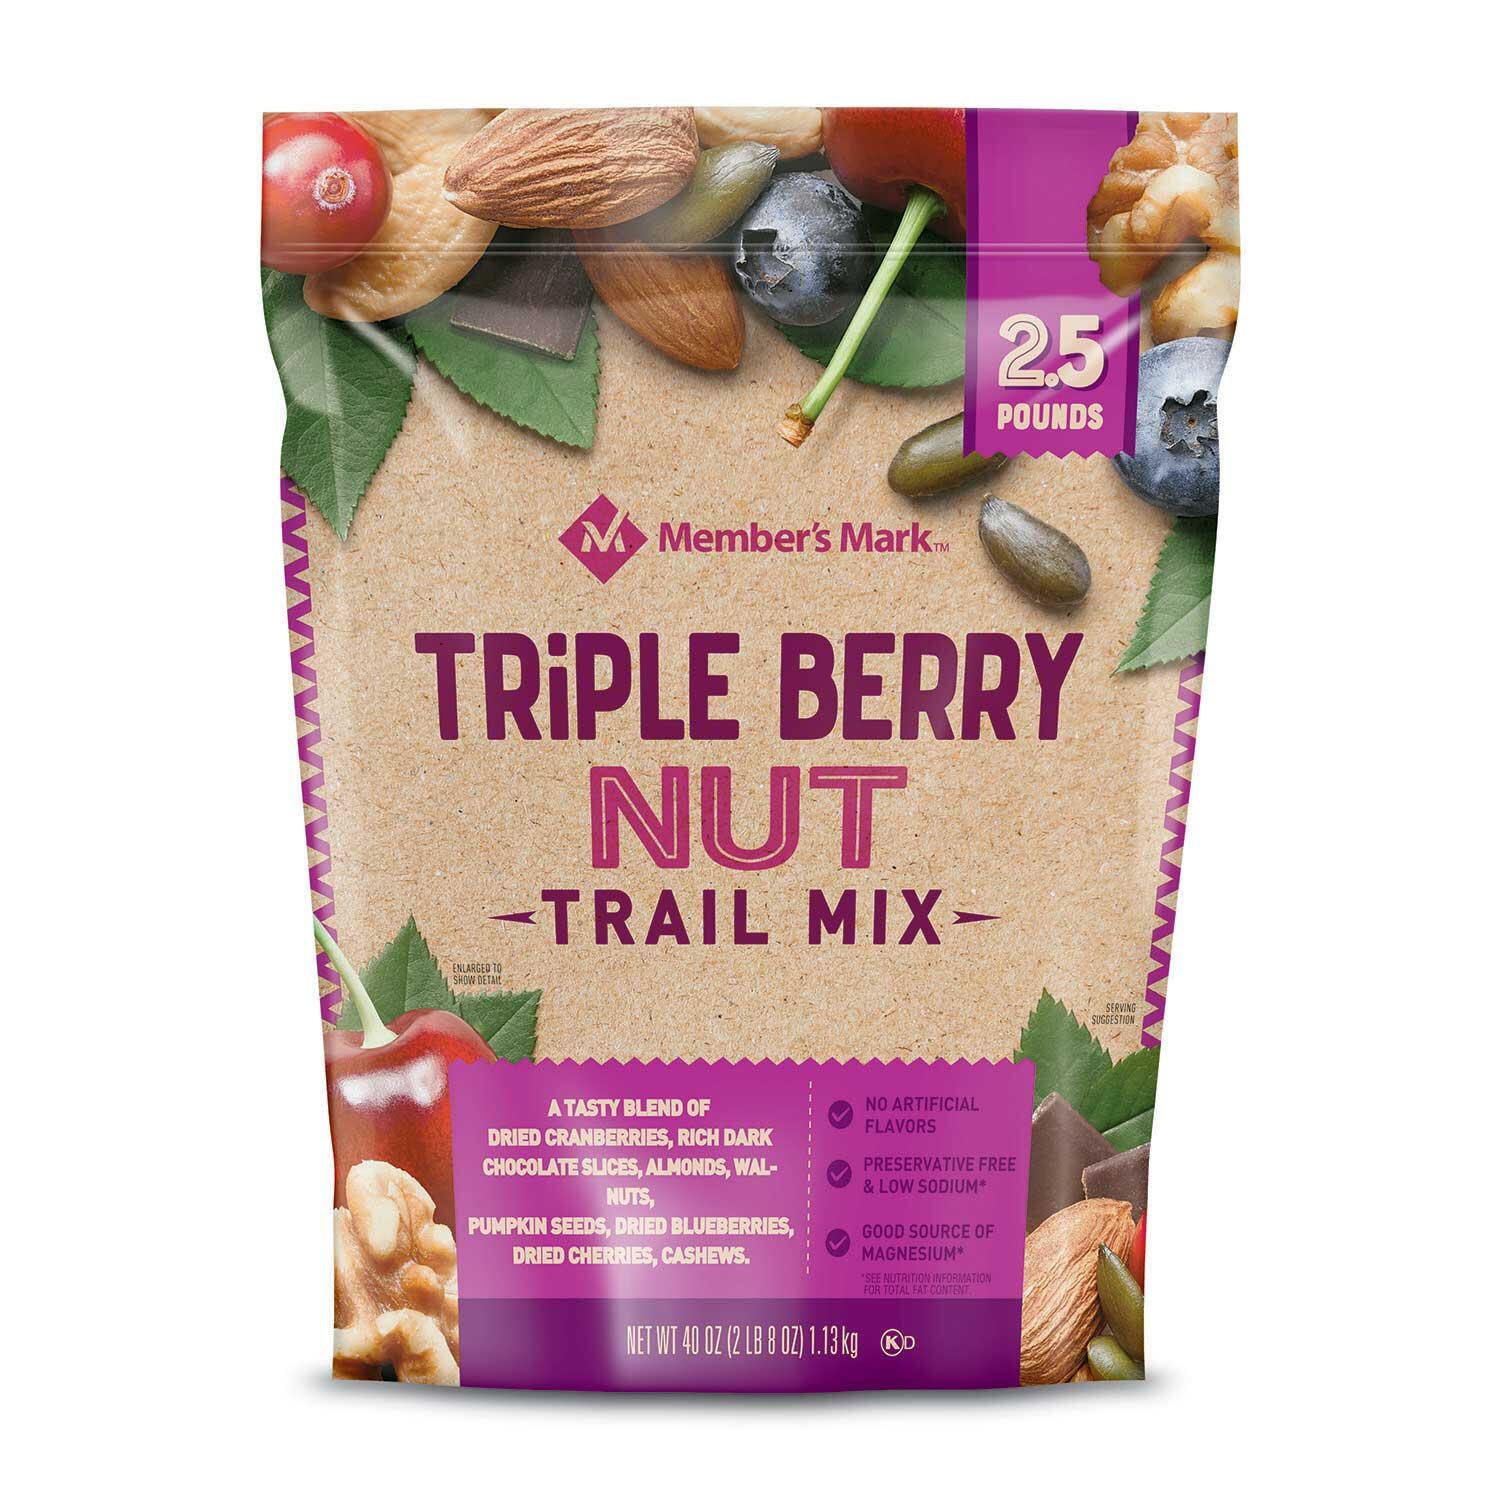 Hỗn hợp hạt và trái cây sấy khô Triple Berry Nut Trail Mix của Member s